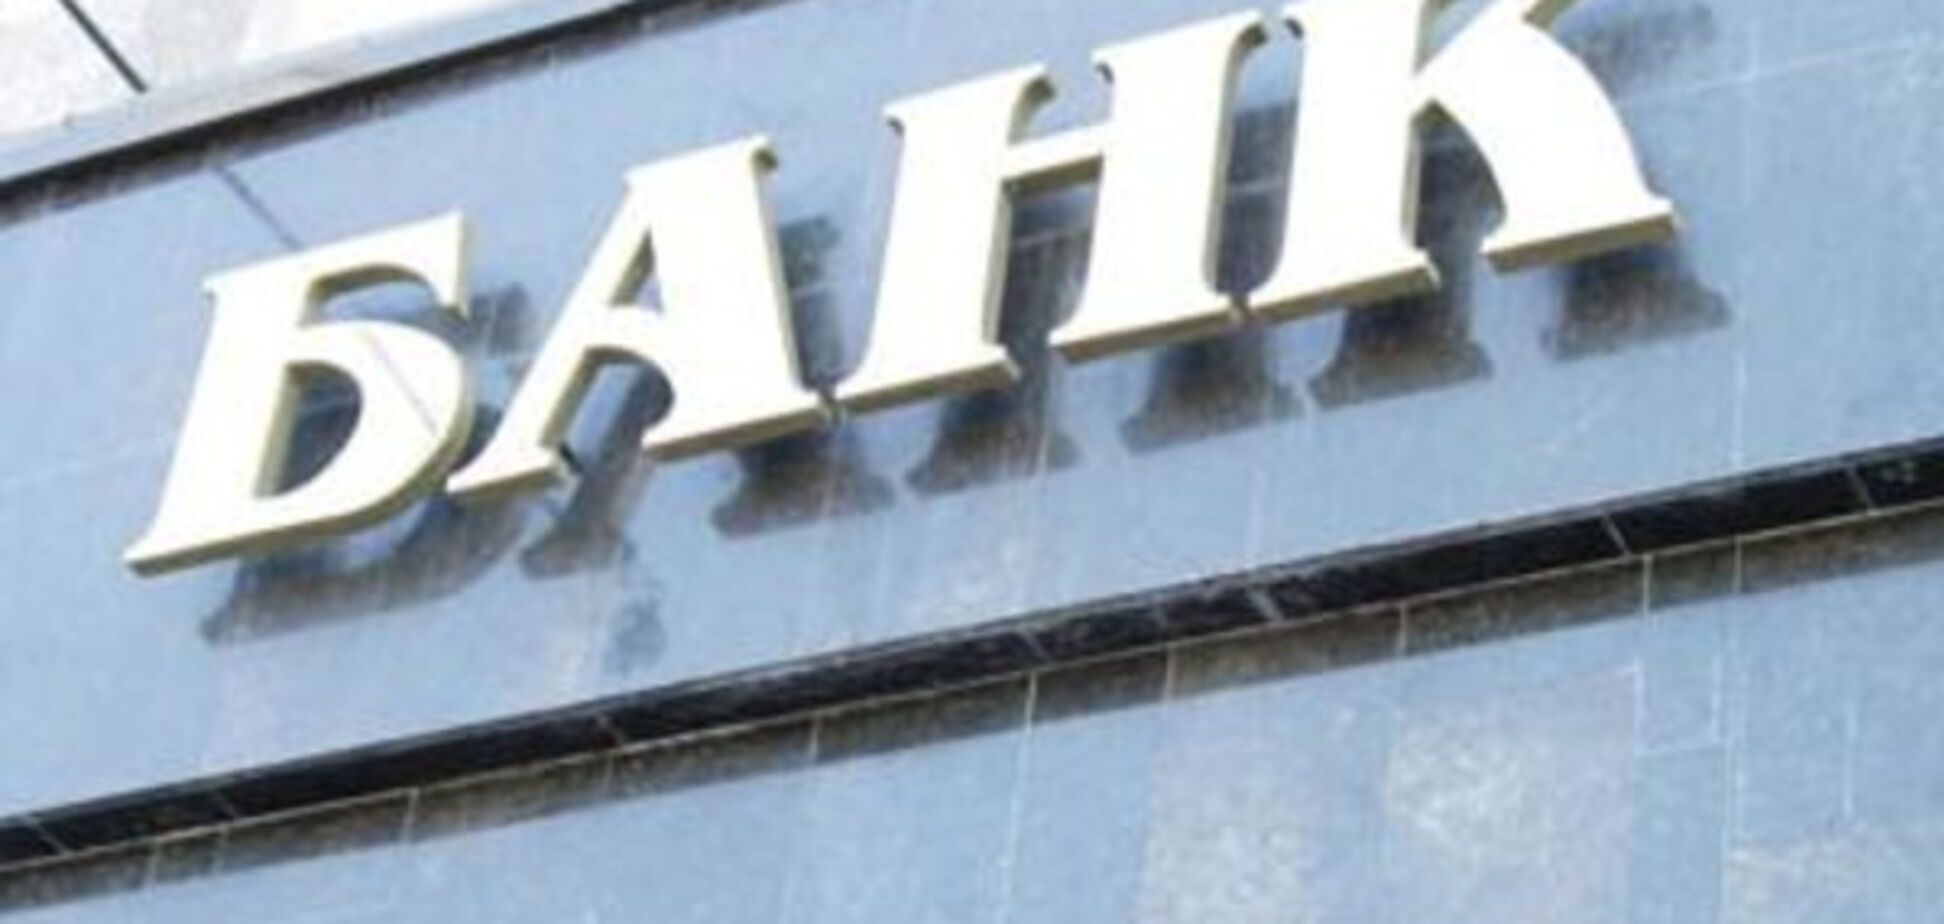 Рыбалка: нельзя допустить закрытия банков с украинским капиталом